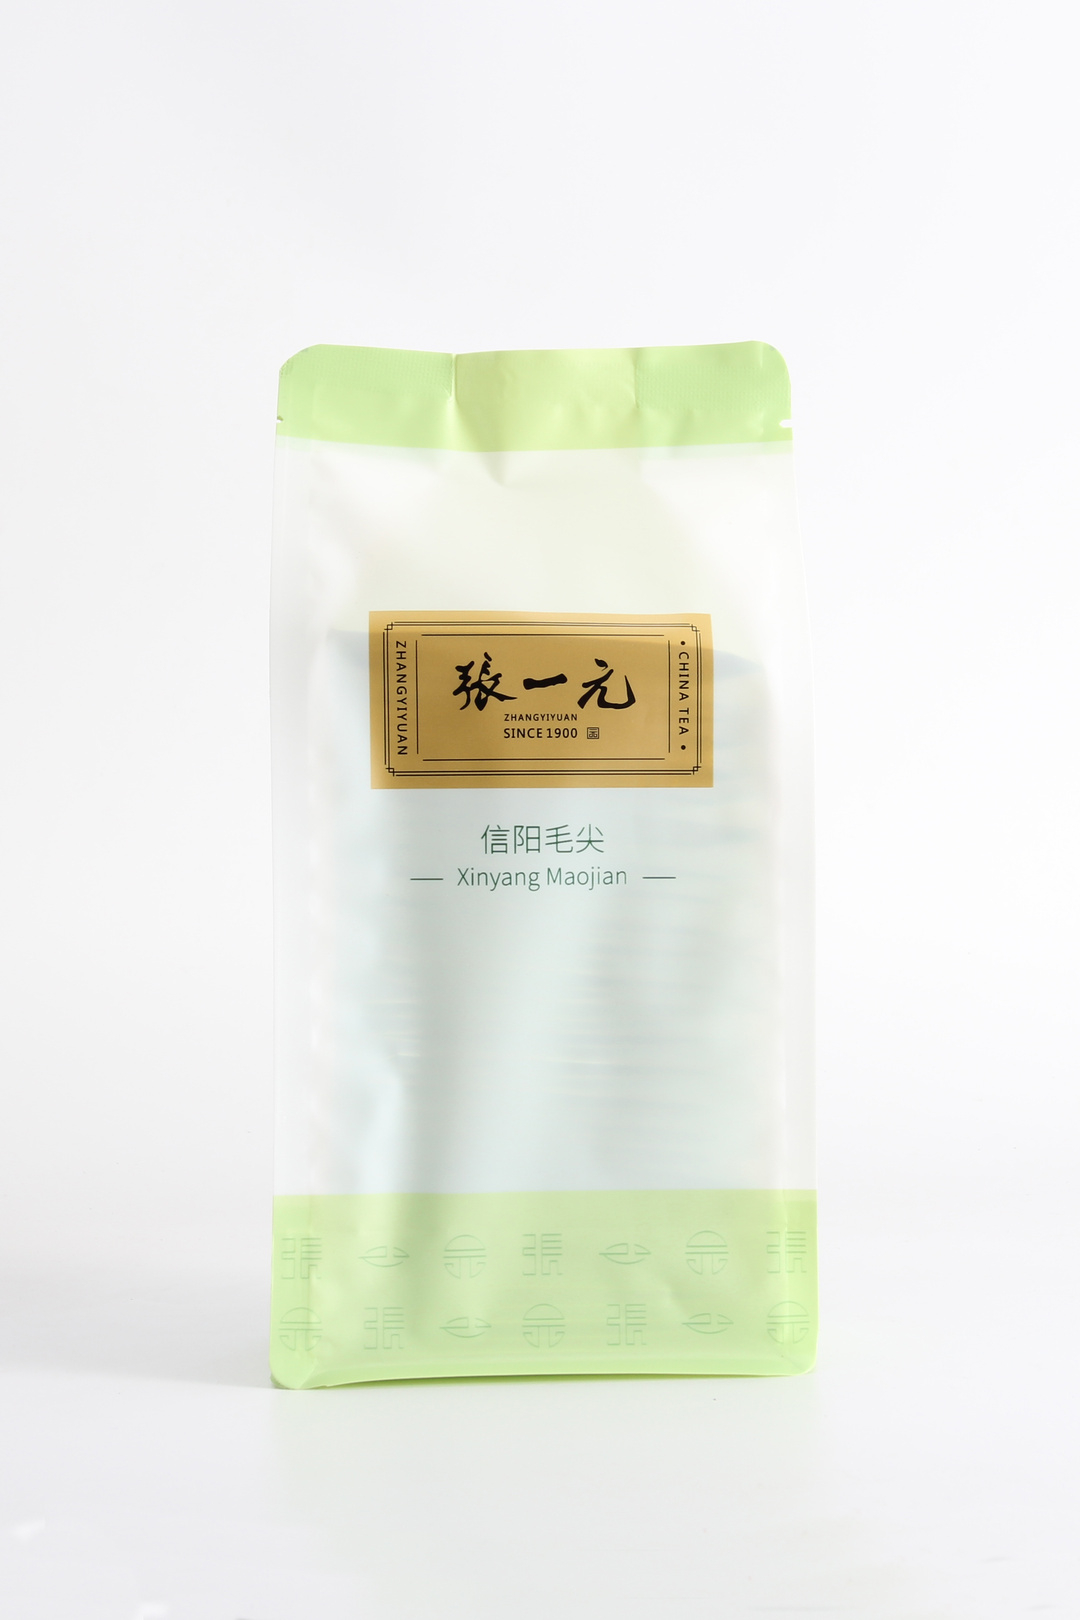 【绿茶展卖季 包邮】张一元茶叶 经典系列 绿茶 信阳毛尖 袋装 80g